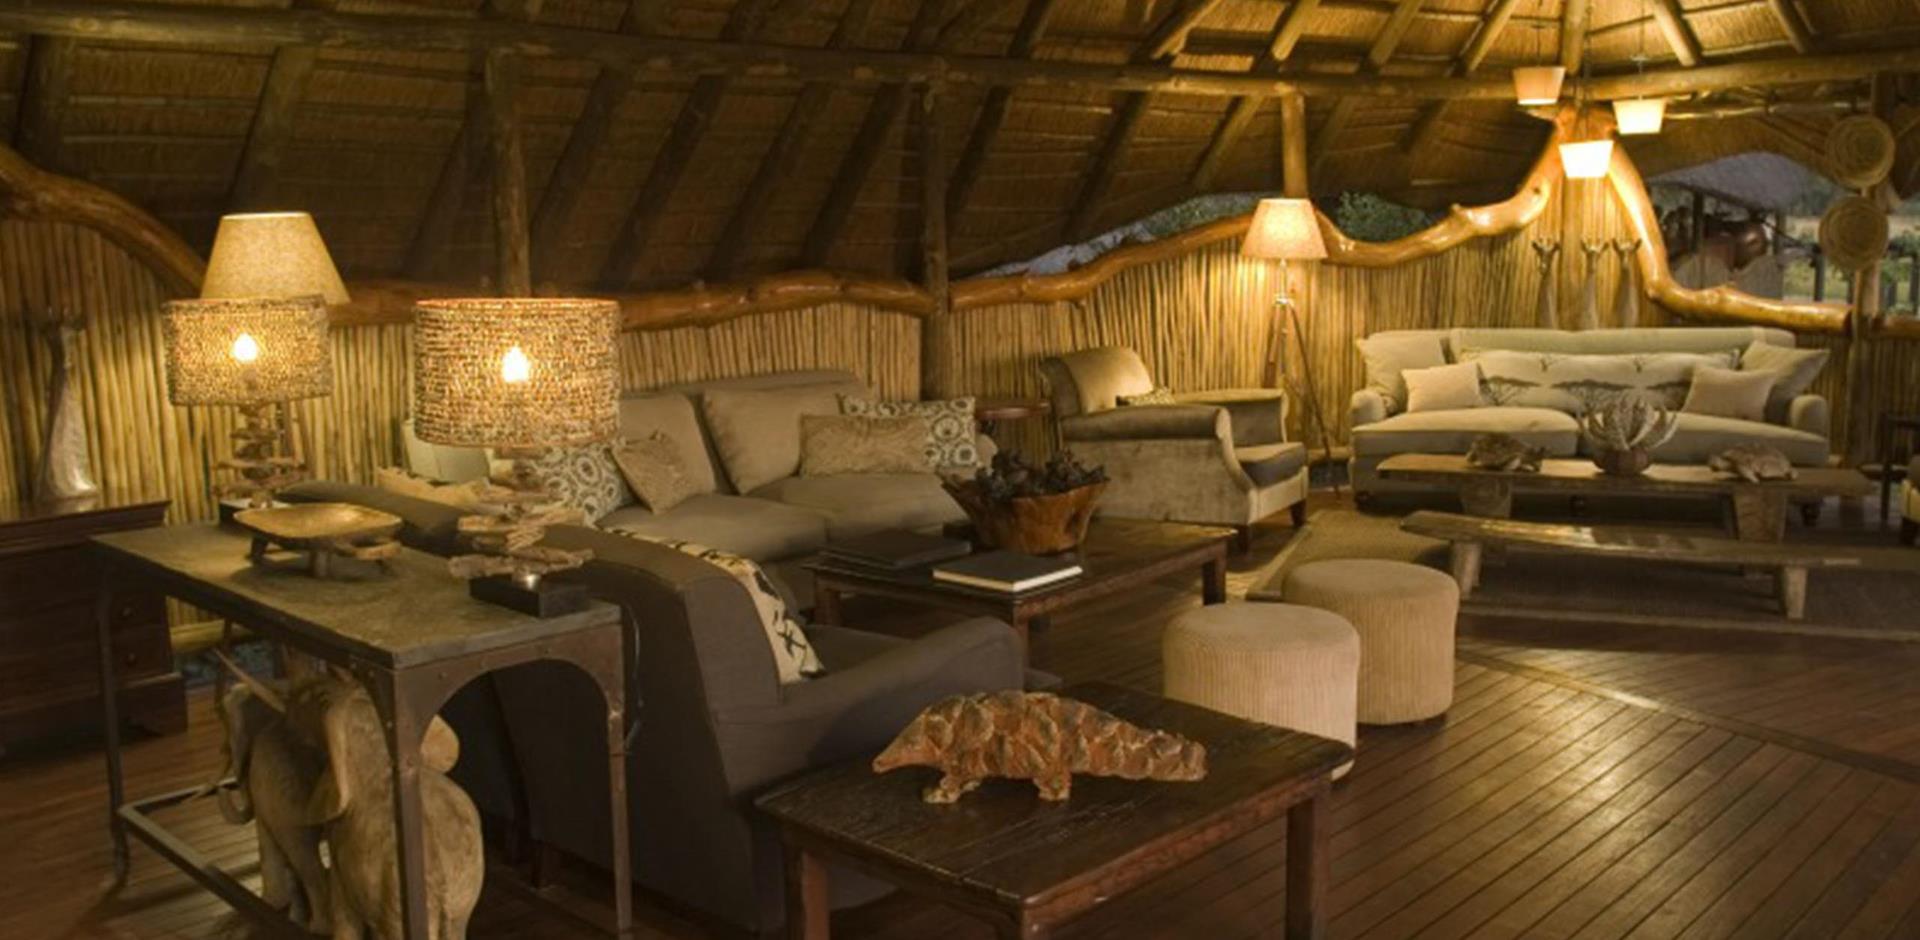 Botswana accommodation, A&K